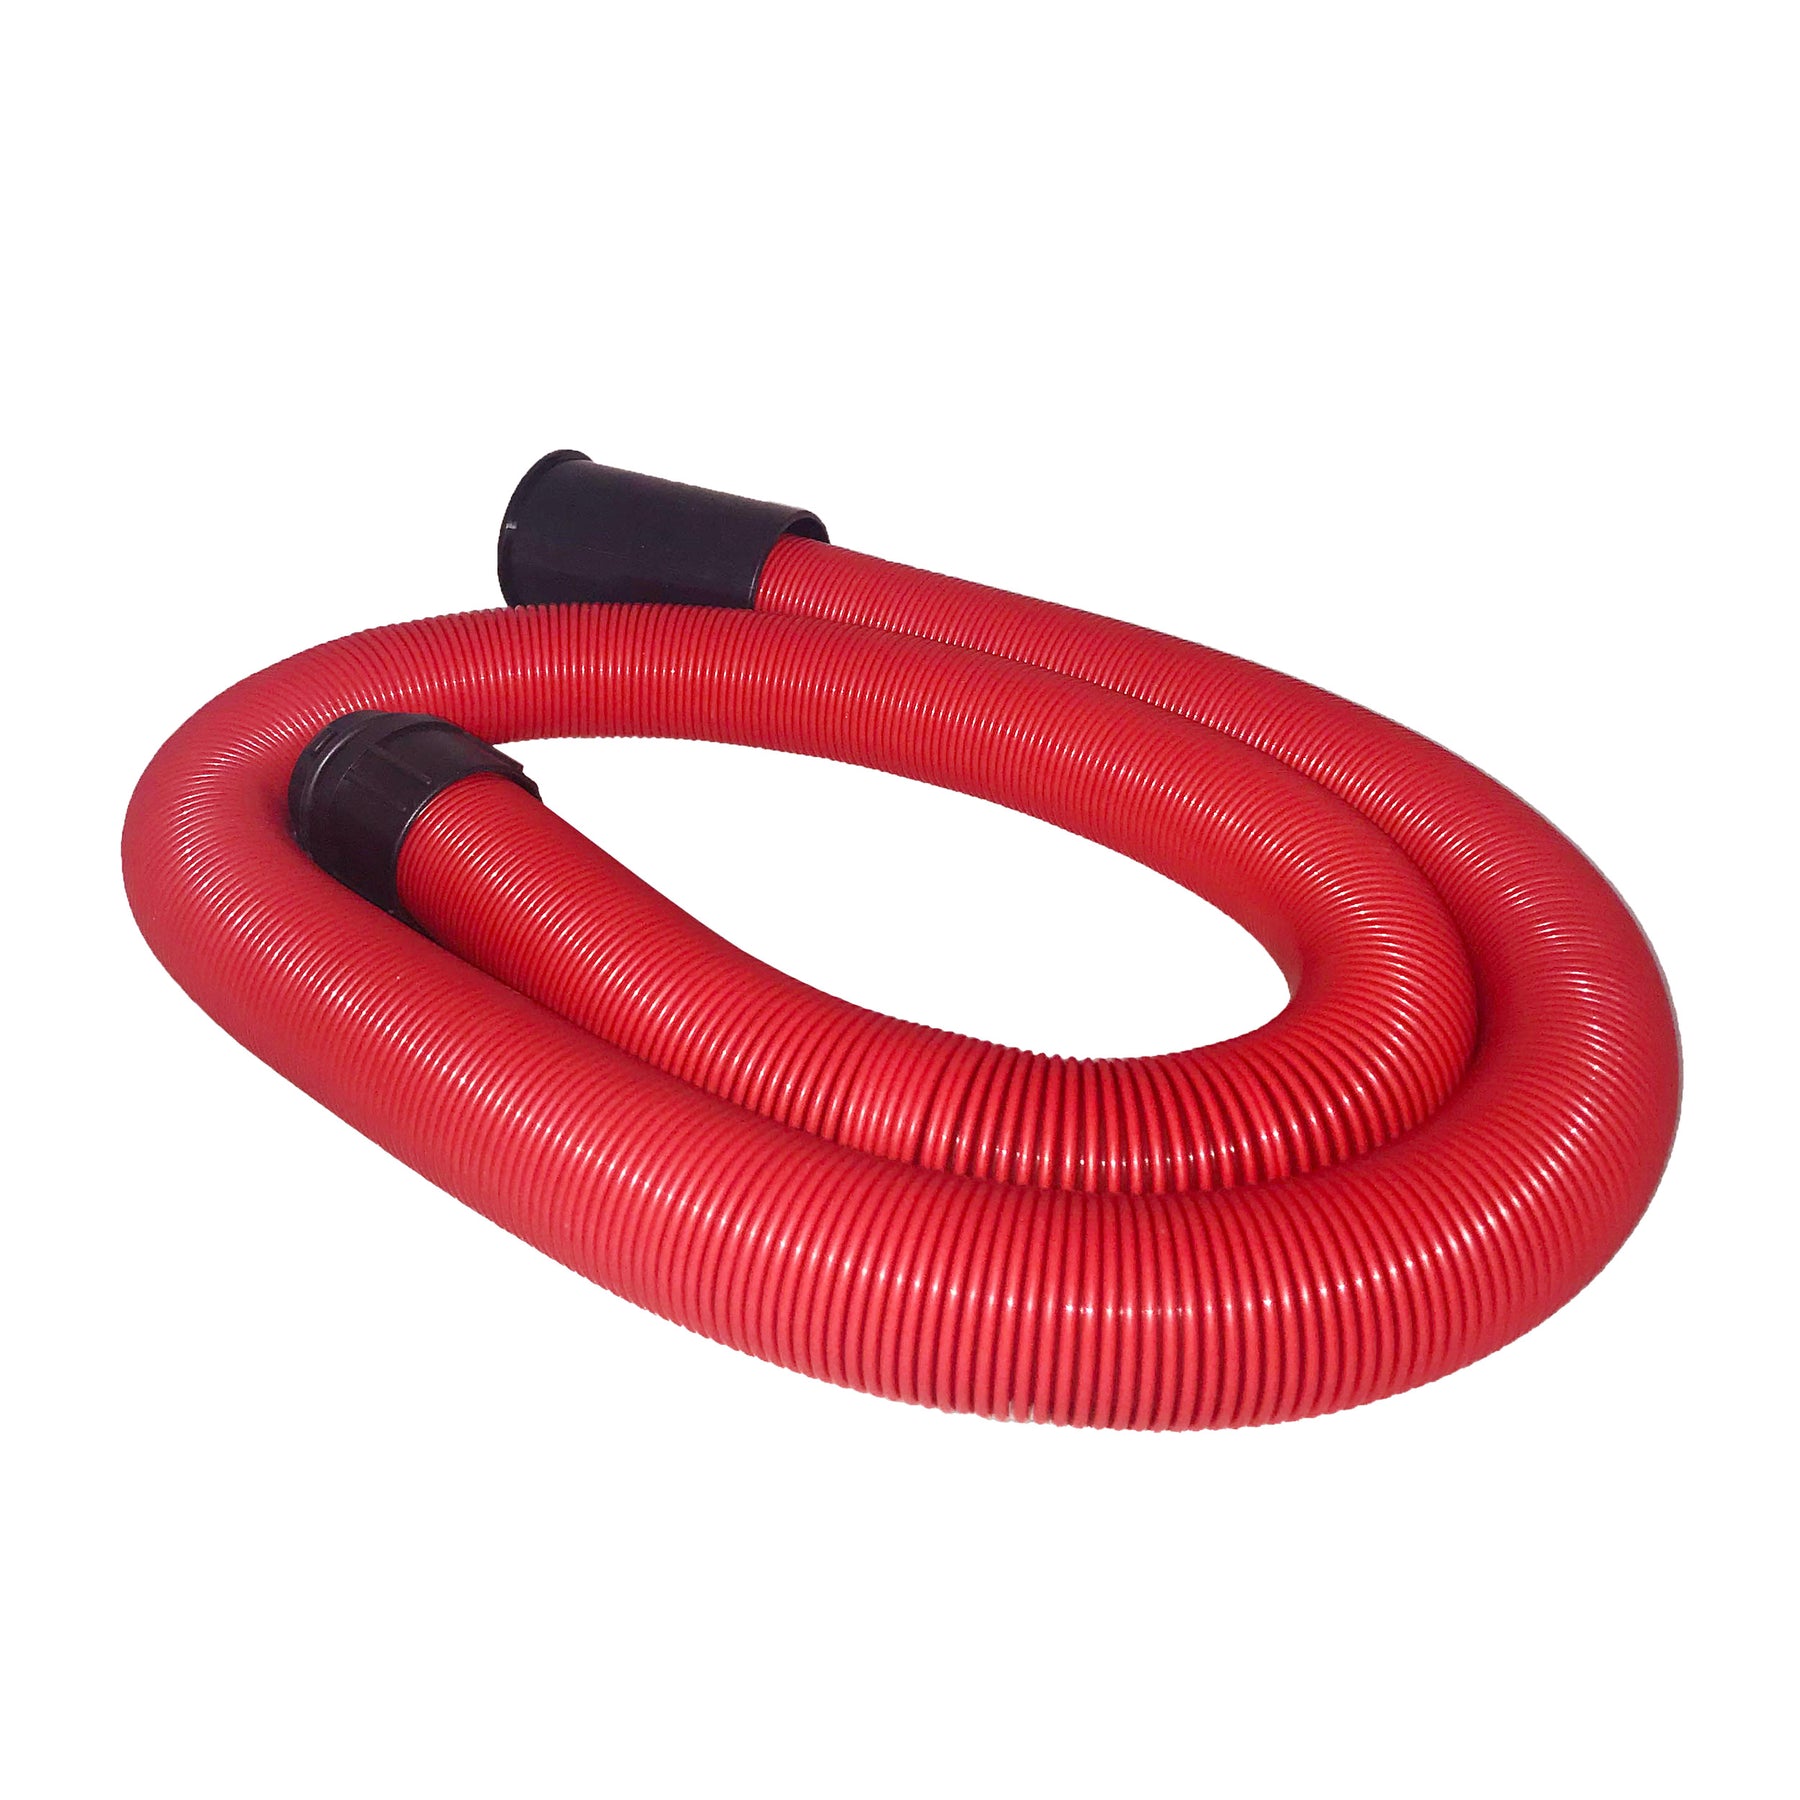 Tubo di ricambio rosso flessibile per asciugatori Brühl, lunghezza 3 metri, con connettori neri ad entrambe le estremità, adatto per estendere la portata durante i processi di asciugatura dei veicoli.